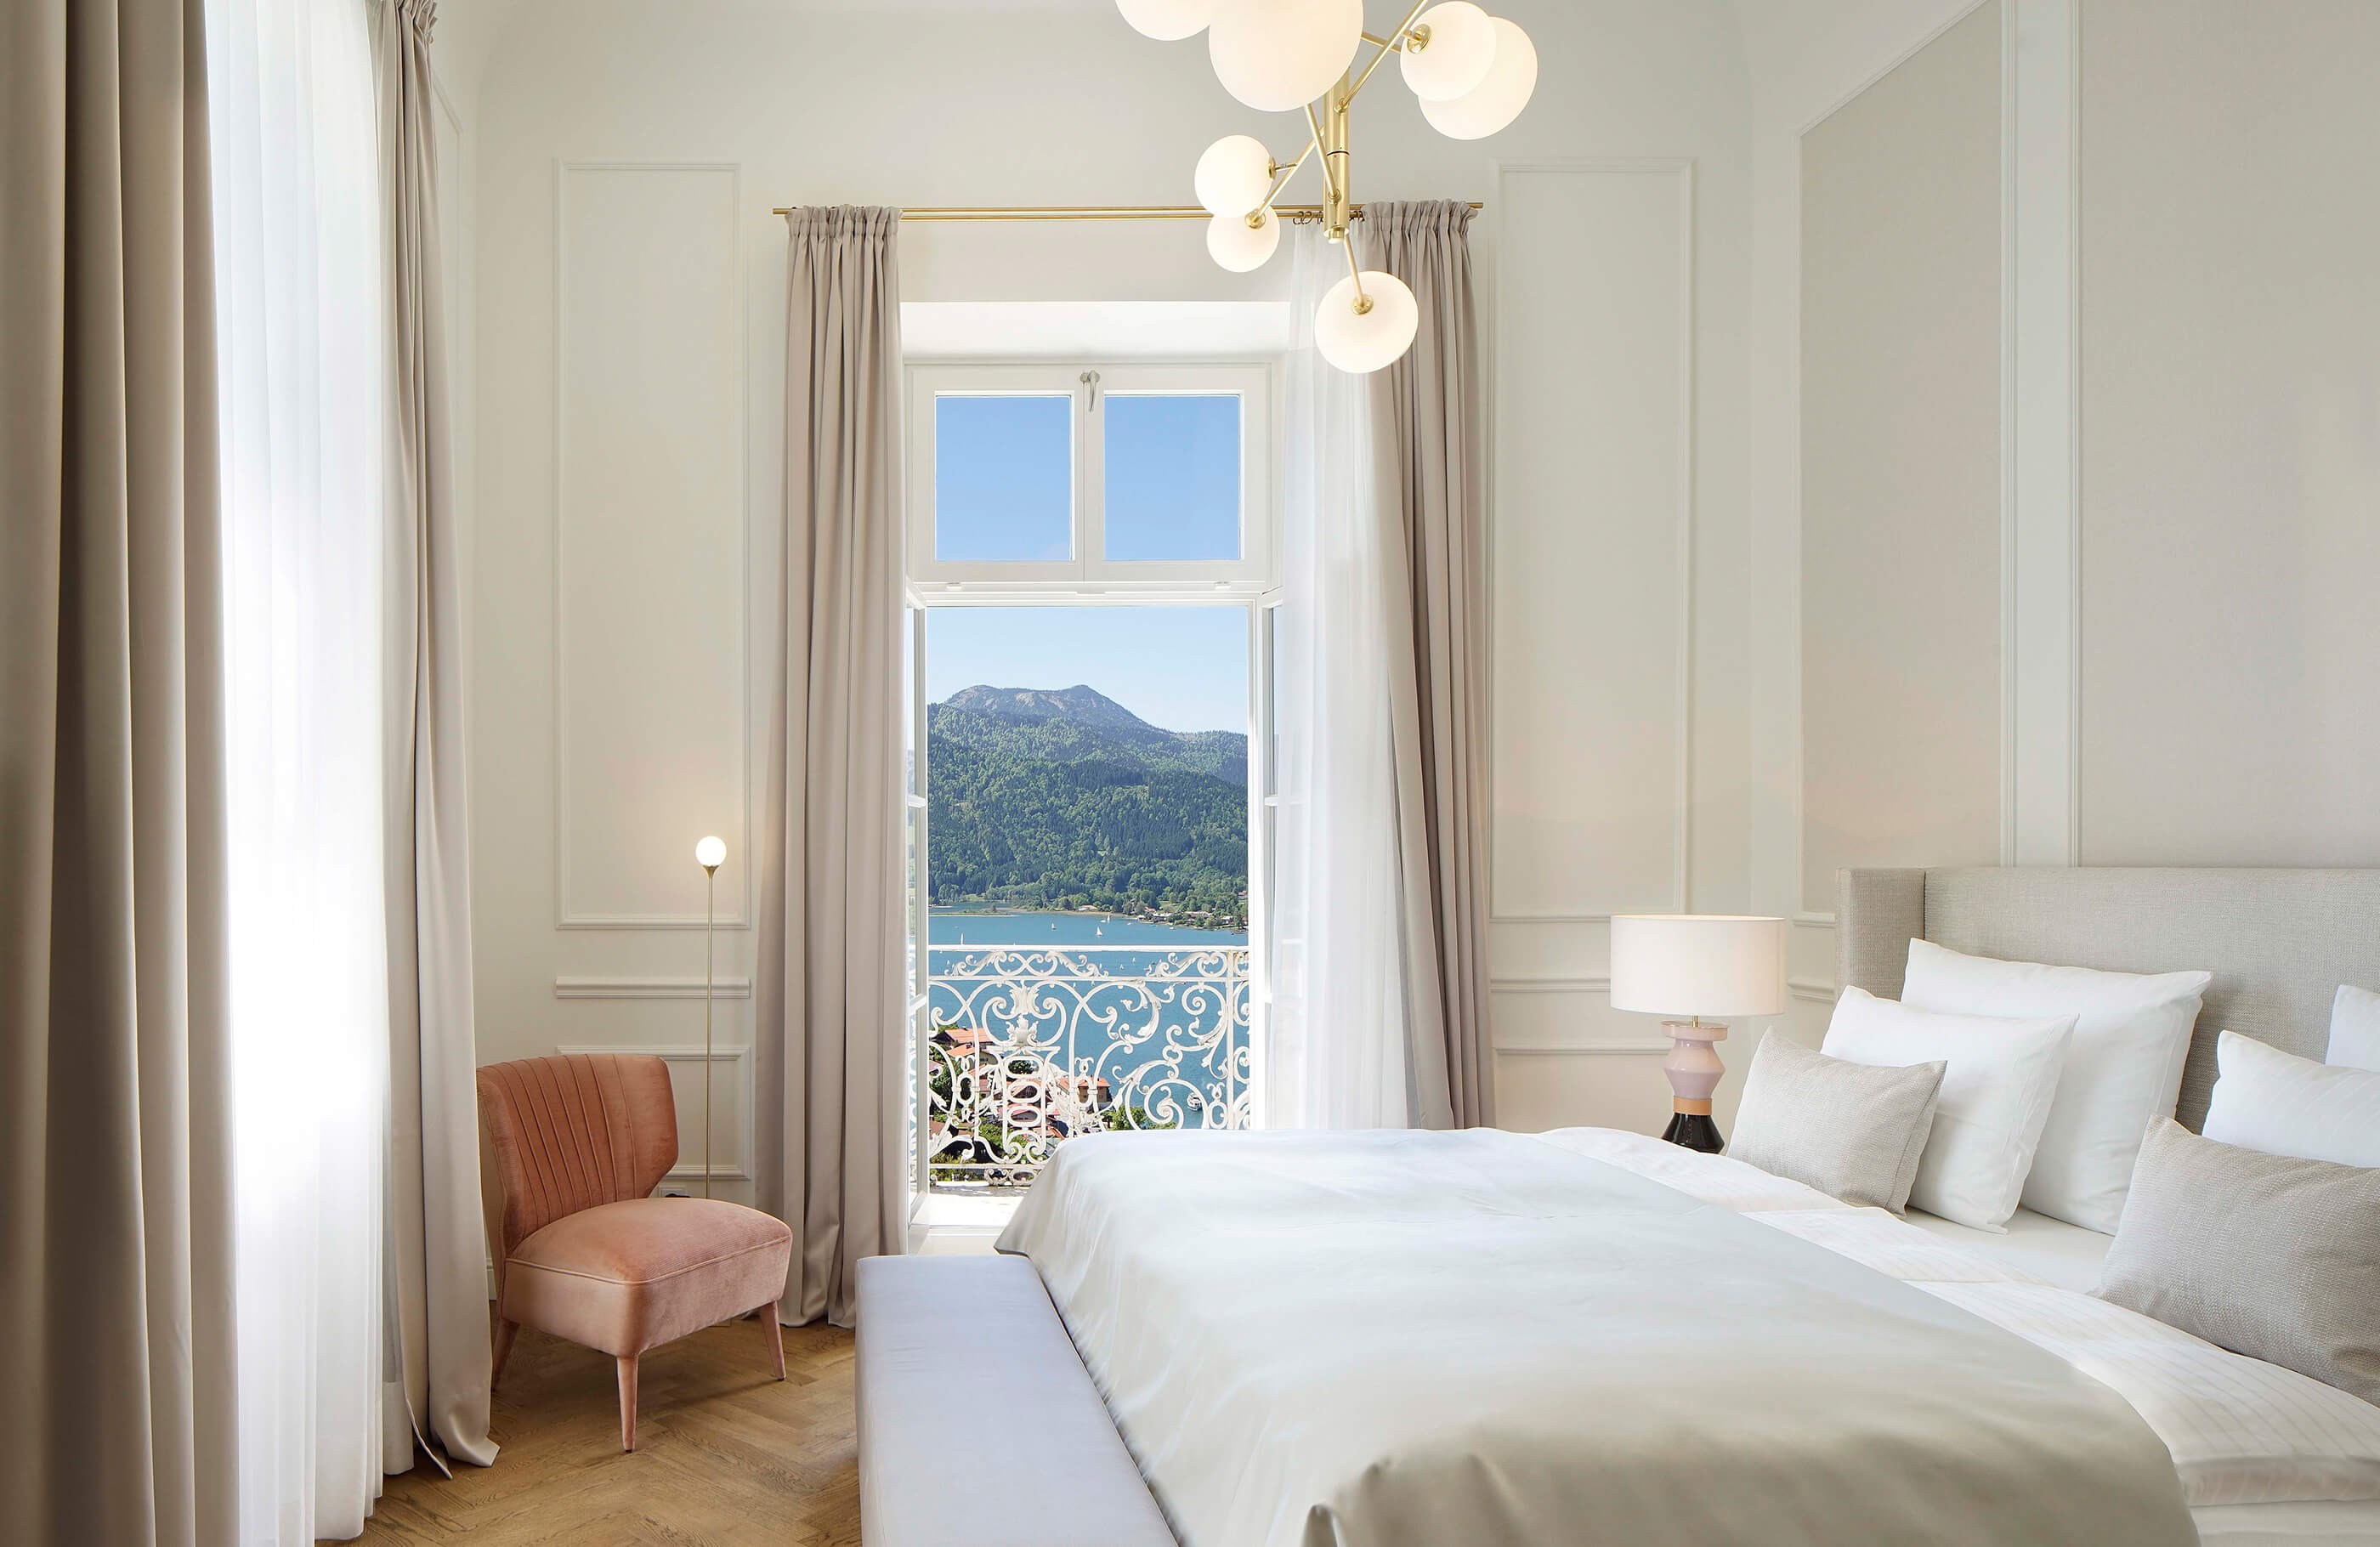 Blick in das Schlafzimmer einer Deluxe Suite im Hotel Das Tegernsee mit einem großen, weiß bezogenem Doppelbett, langen hell-grauen Vorhängen vor zwei Fenstern und Zugang zum Balkon mit Seeblick.